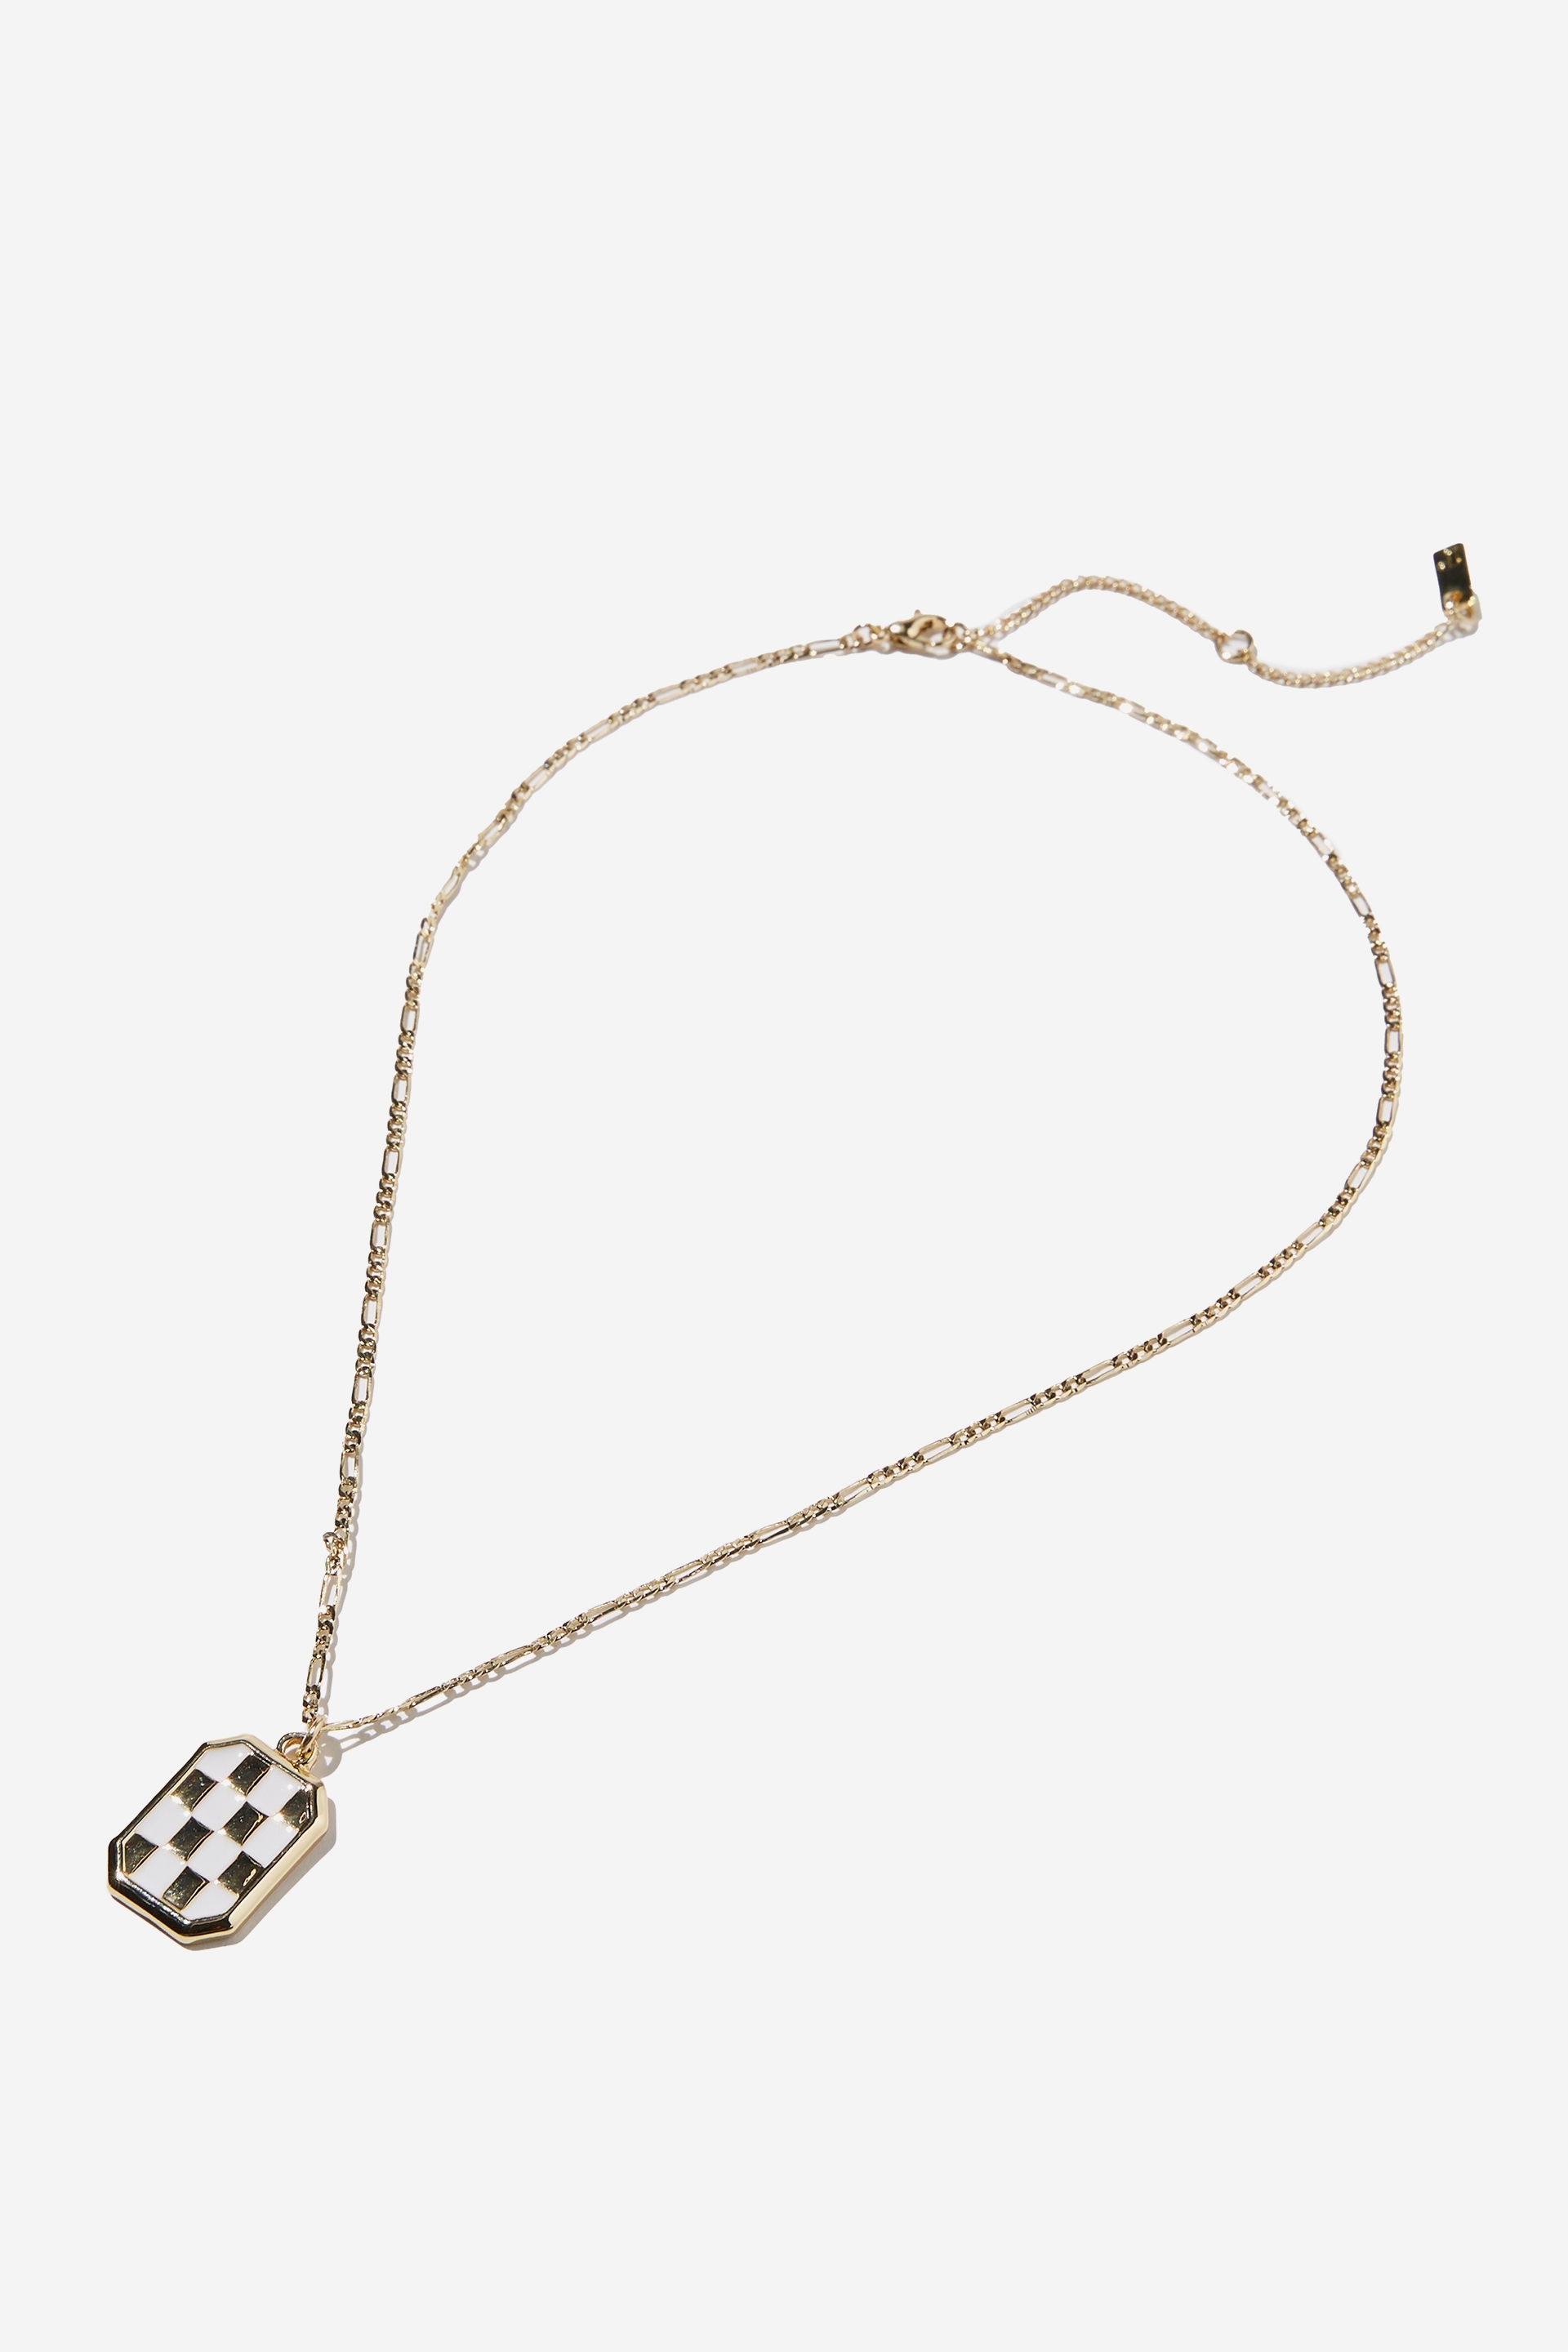 Rubi - Premium Pendant Necklace - Gold plated white checkerboard